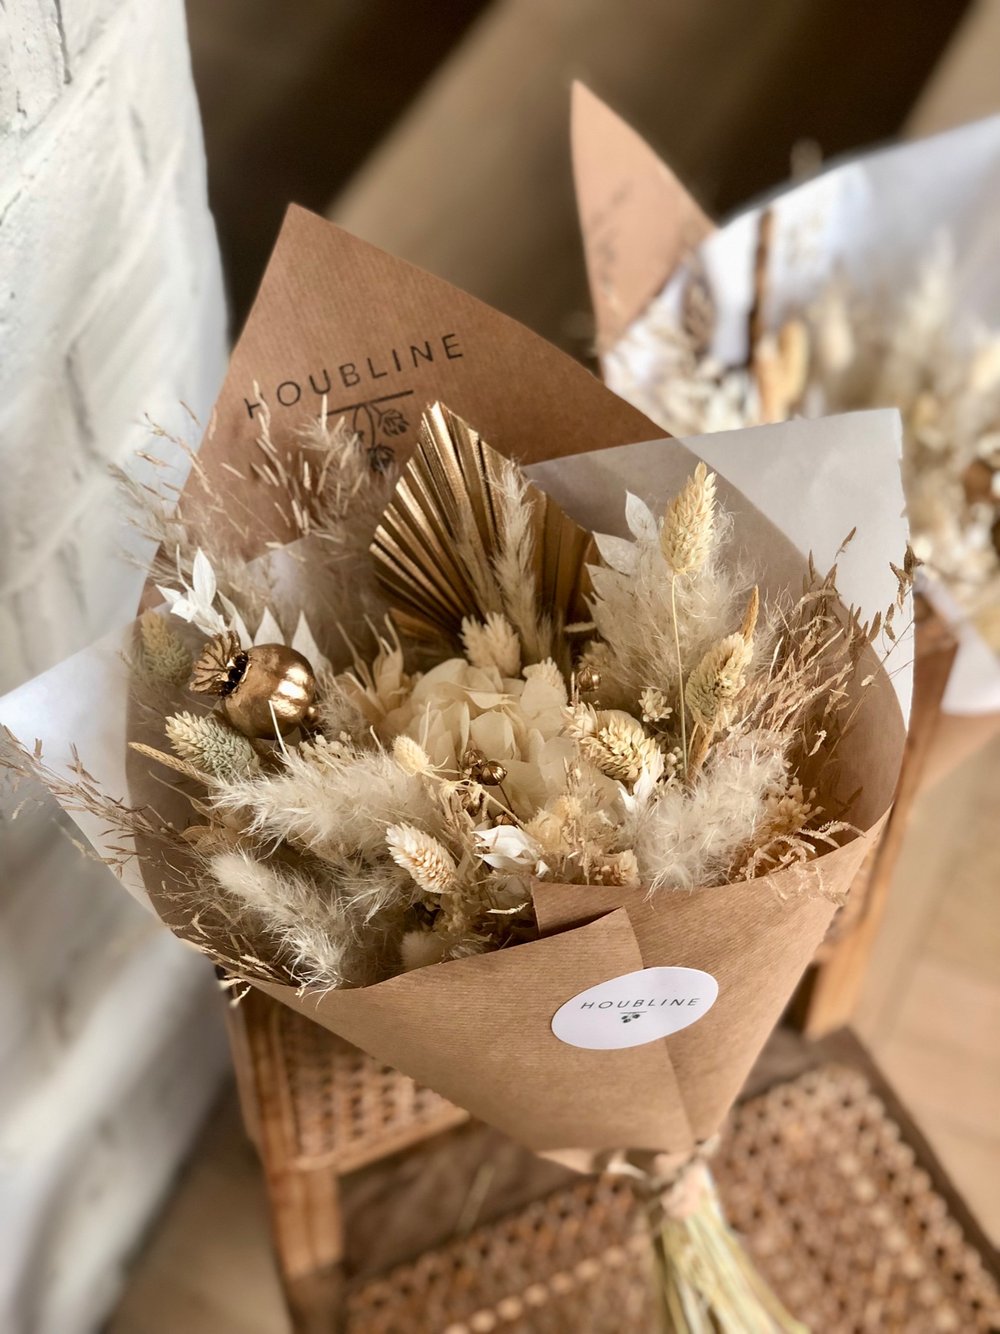 Bouquet de Noël doré — Houbline - Fleurs séchées et Houblon des Flandres